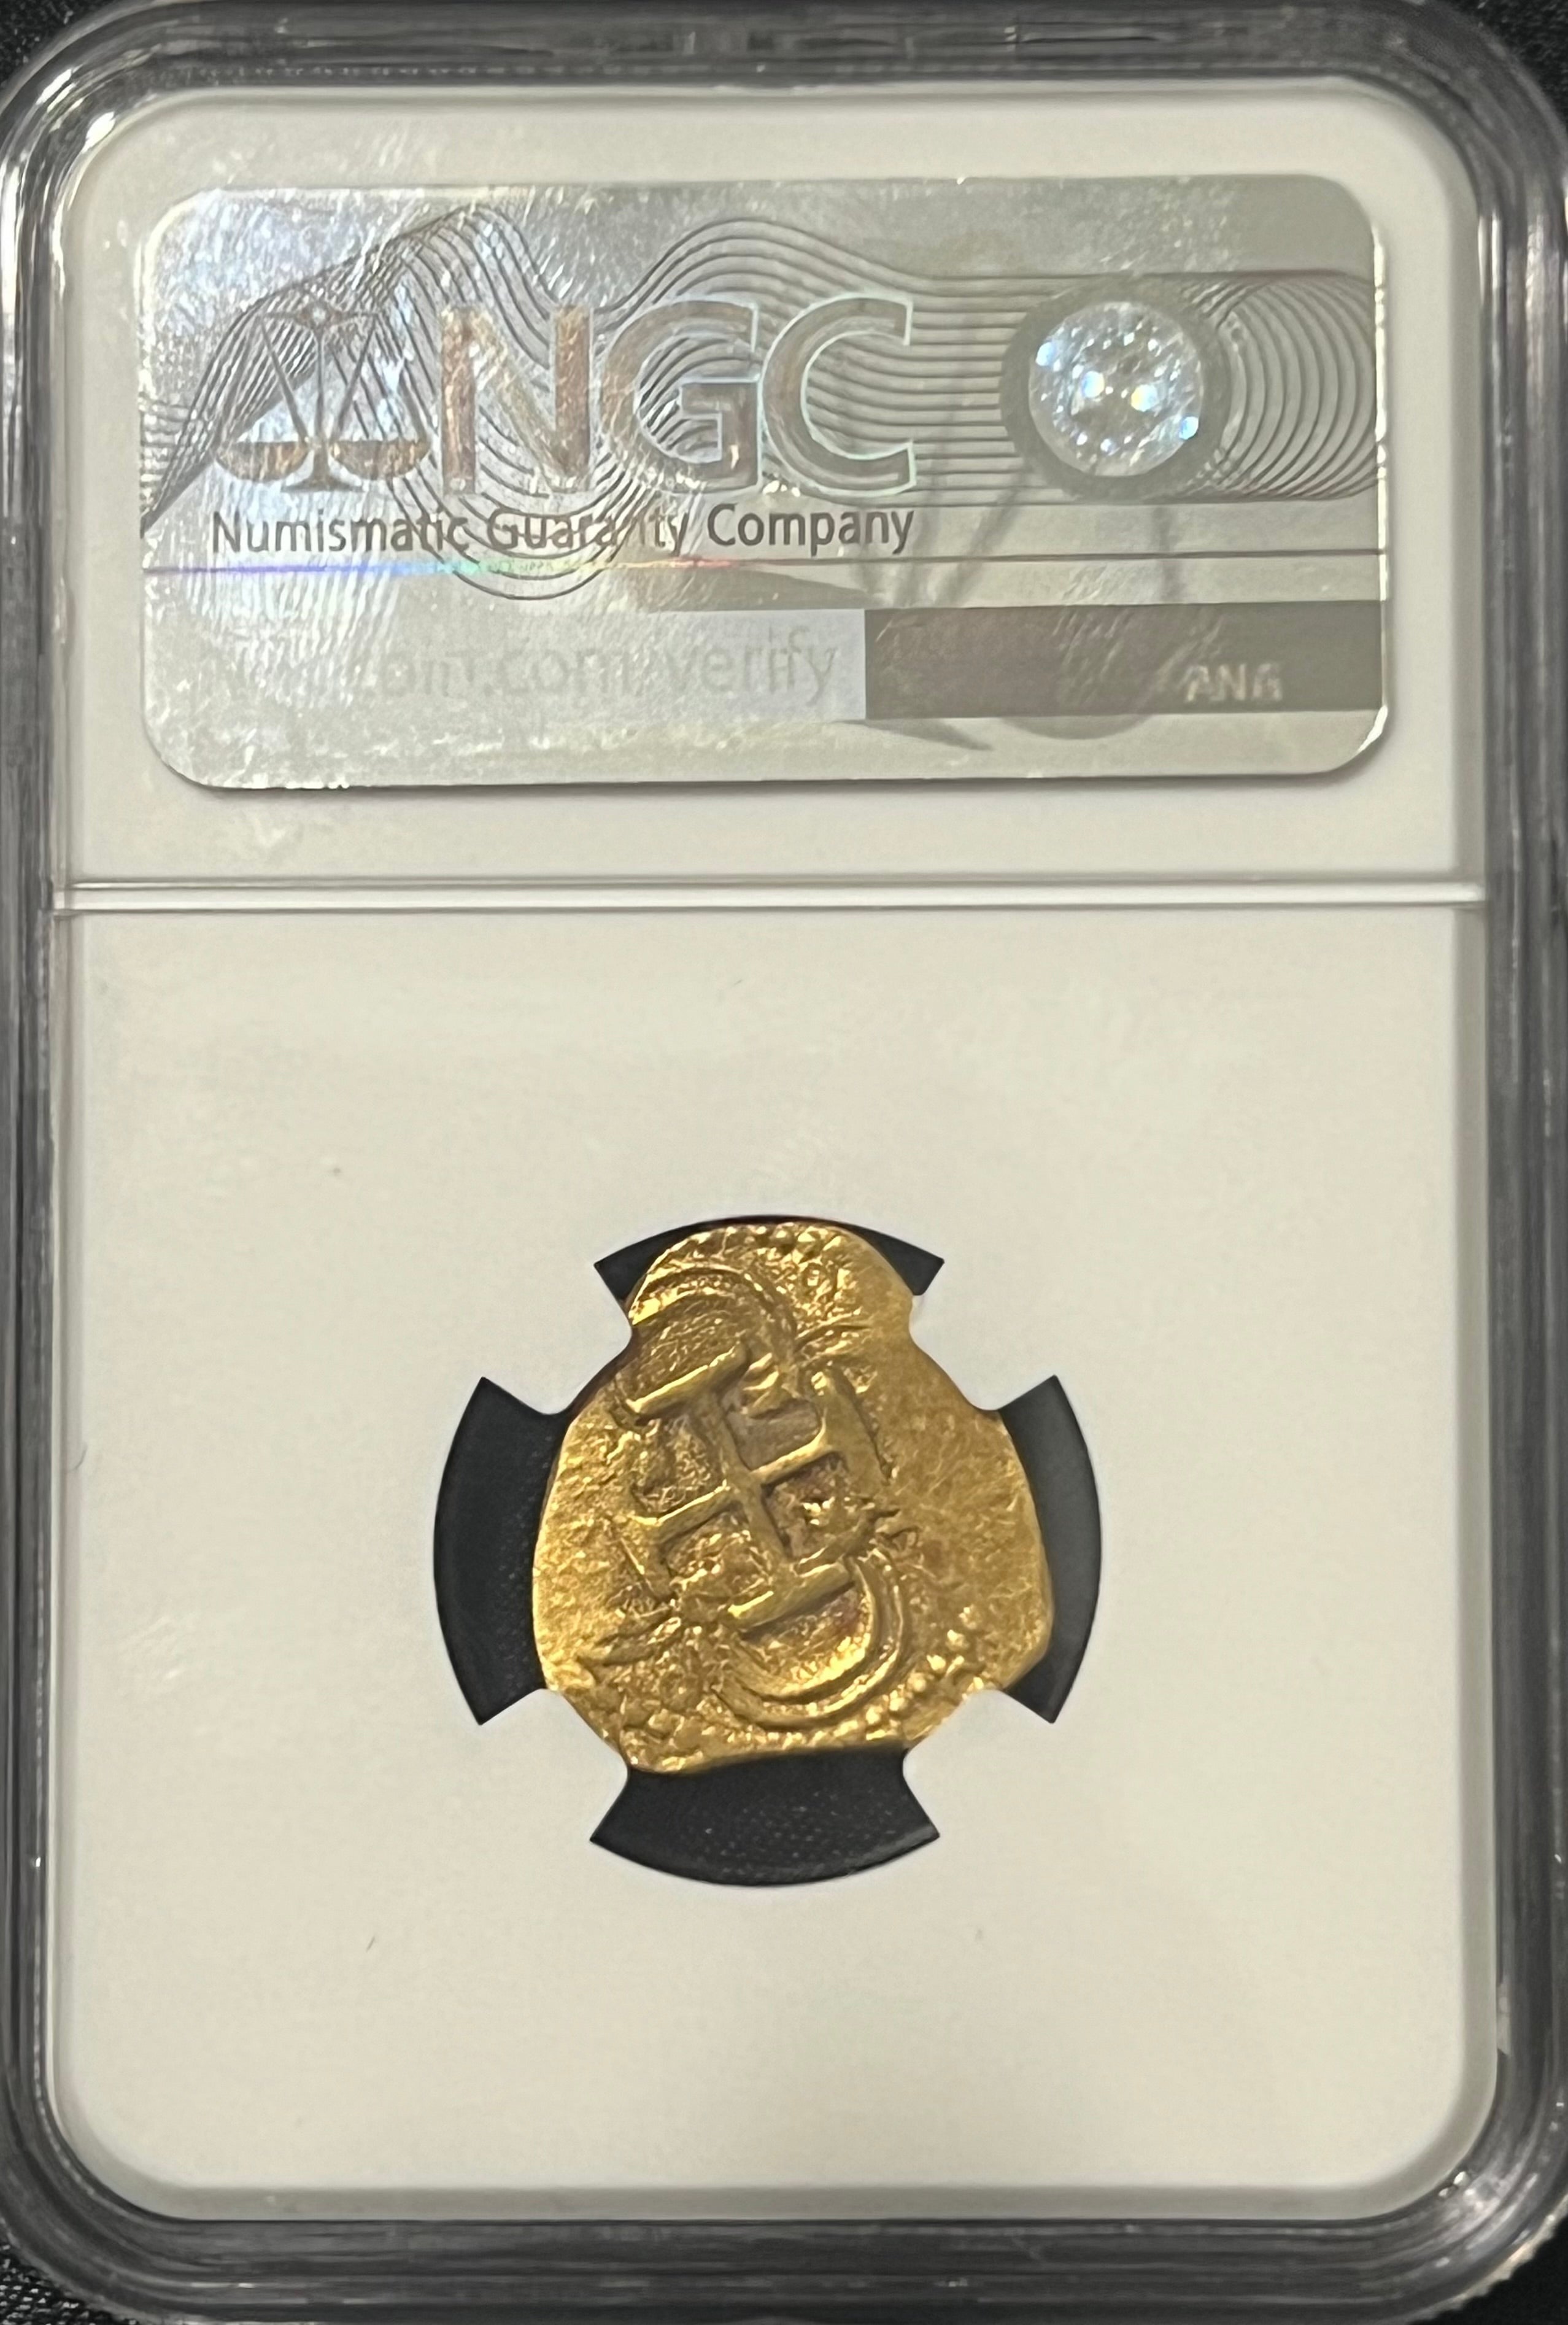 2 Escudos Seville, Spain Gold Coin NGC Grade MS 61